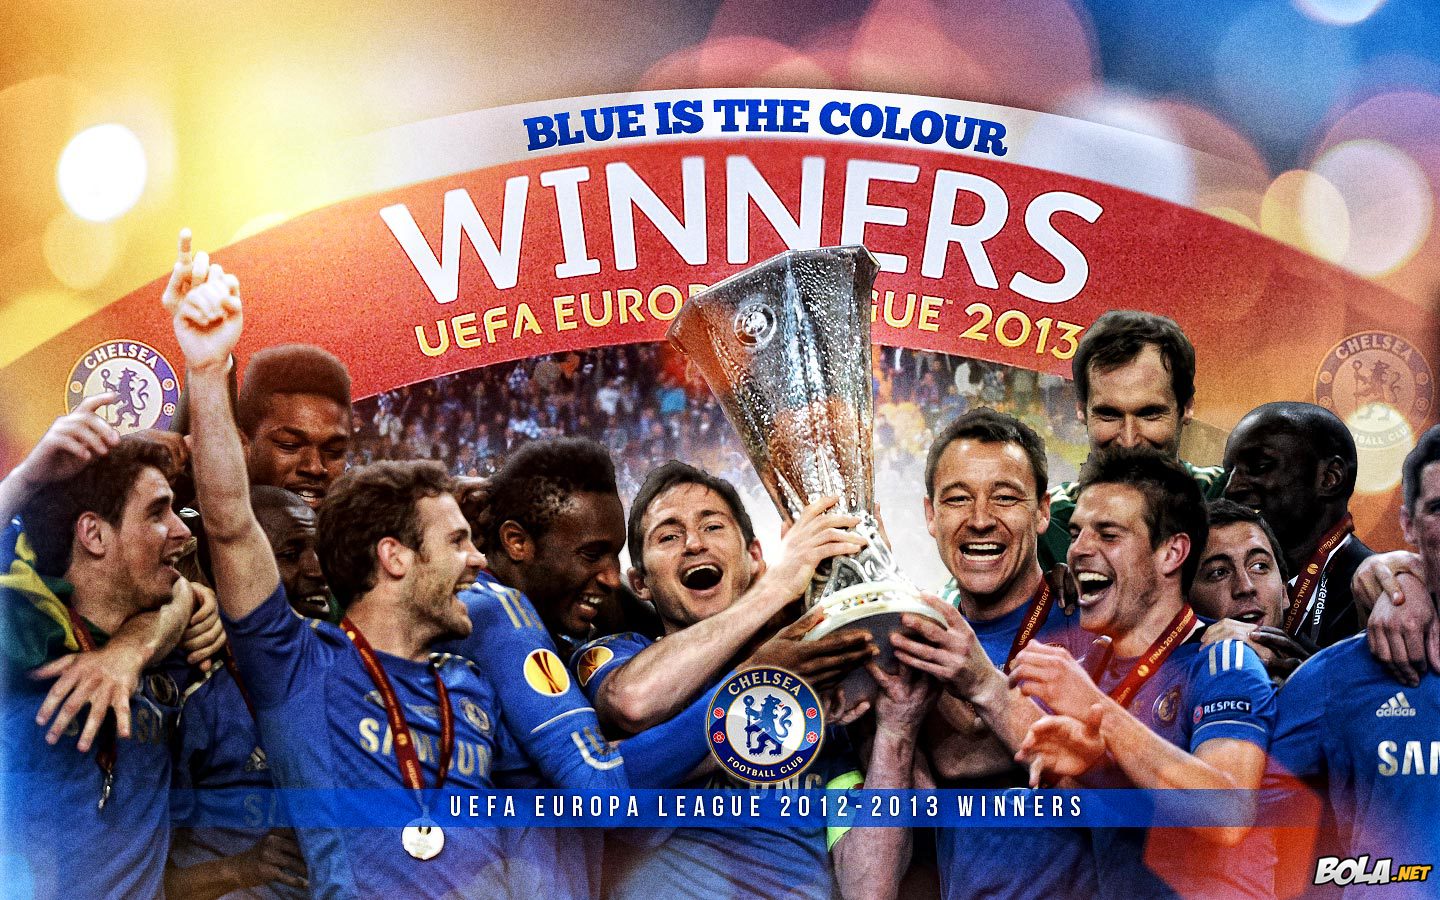 Deskripsi : Wallpaper Chelsea Europa League Winners, size: 1440x900